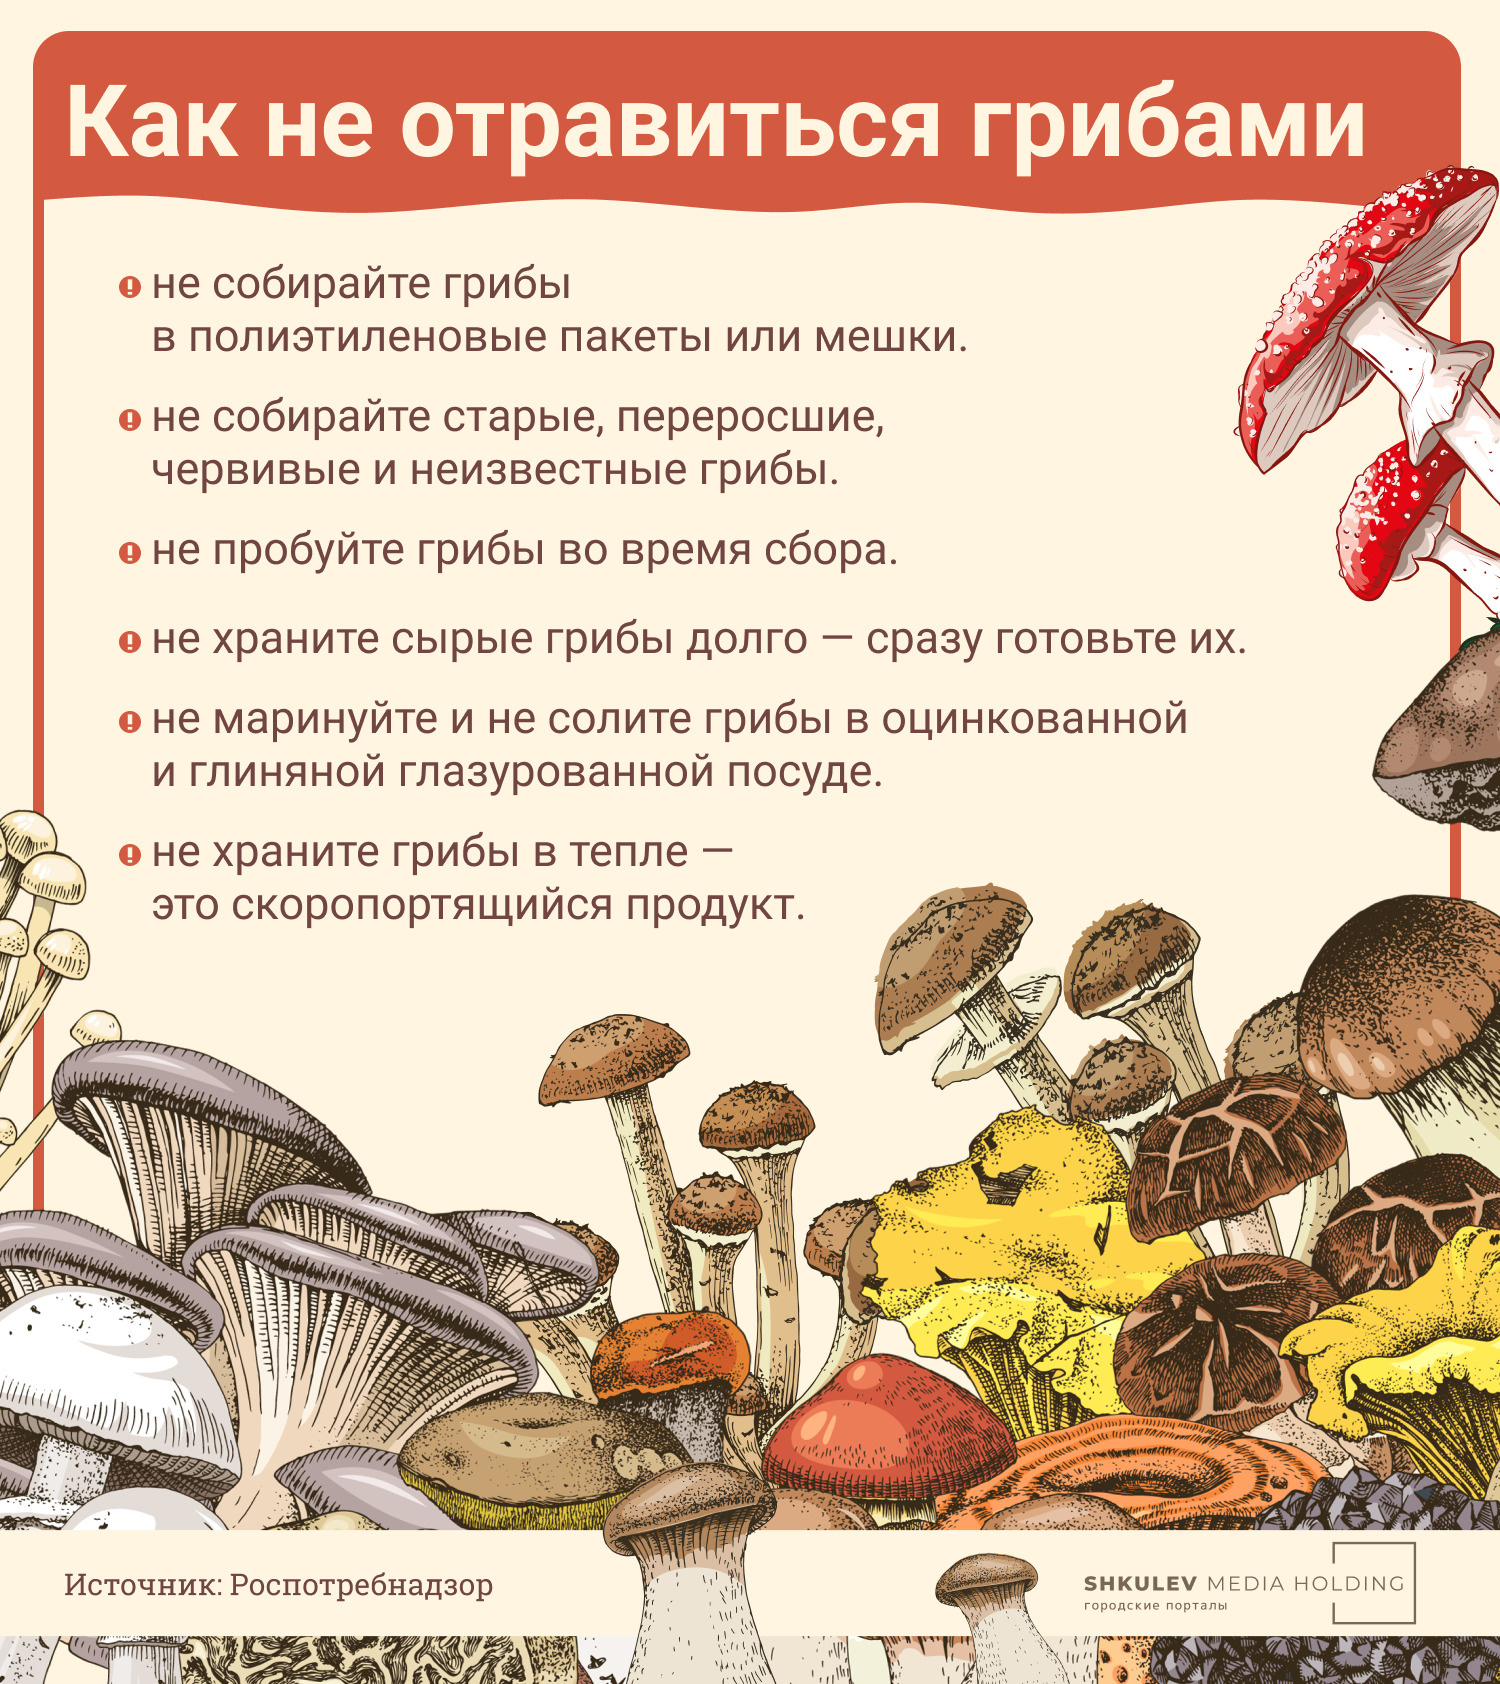 Соблюдайте эти шесть элементарных правил, и вы наверняка не отравитесь грибами